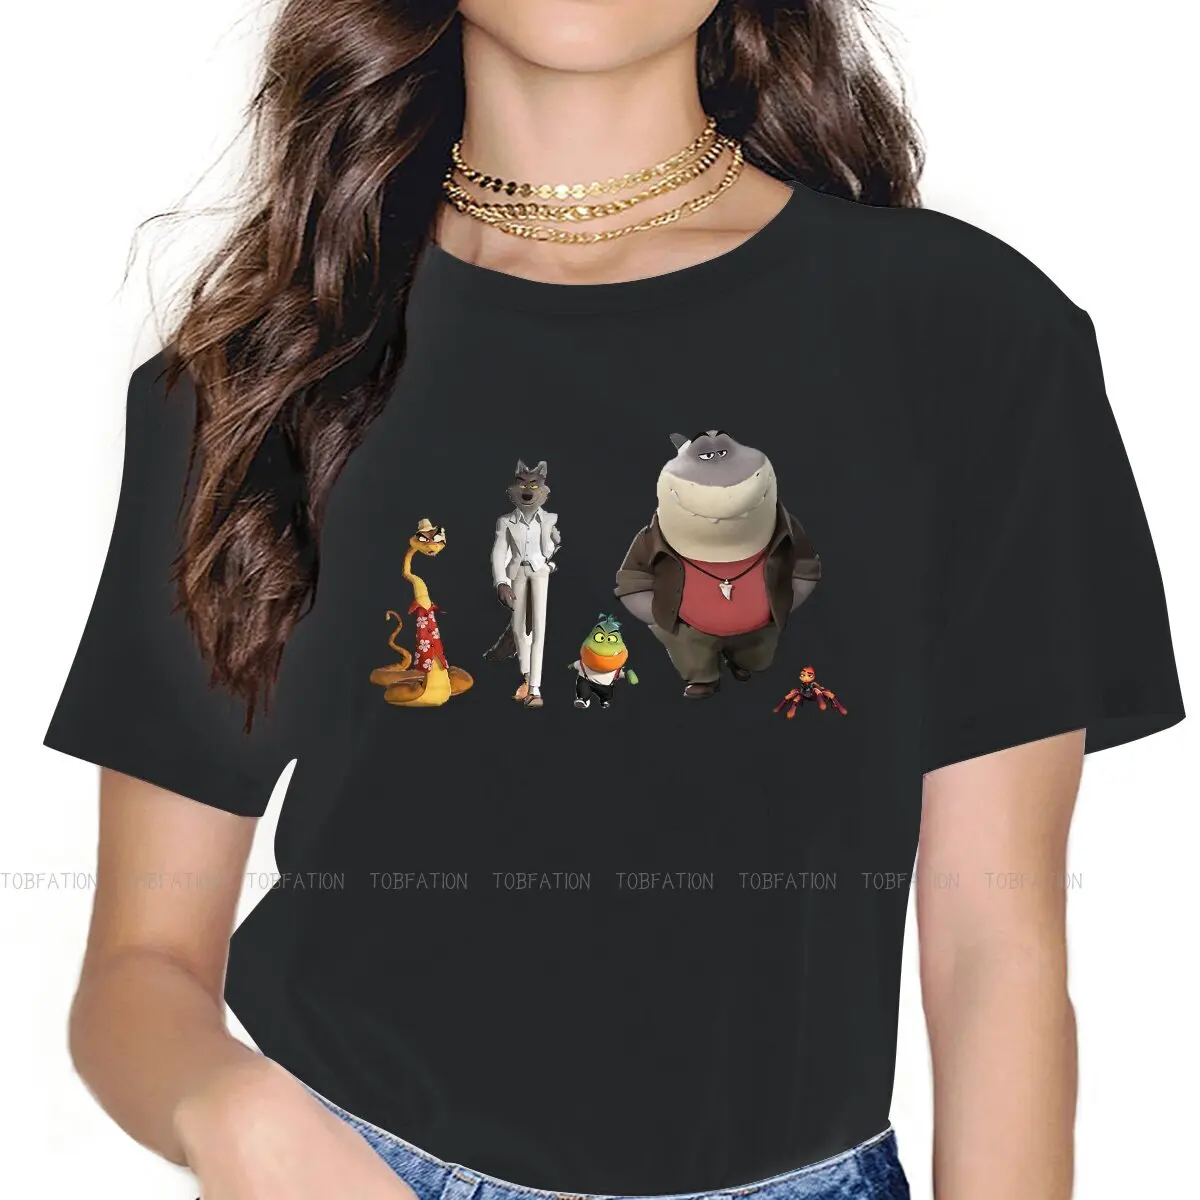 

Костюм паука змеи лисы Специальная футболка для девочек плохие парни 4XL новый дизайн подарочная одежда футболка горячая Распродажа